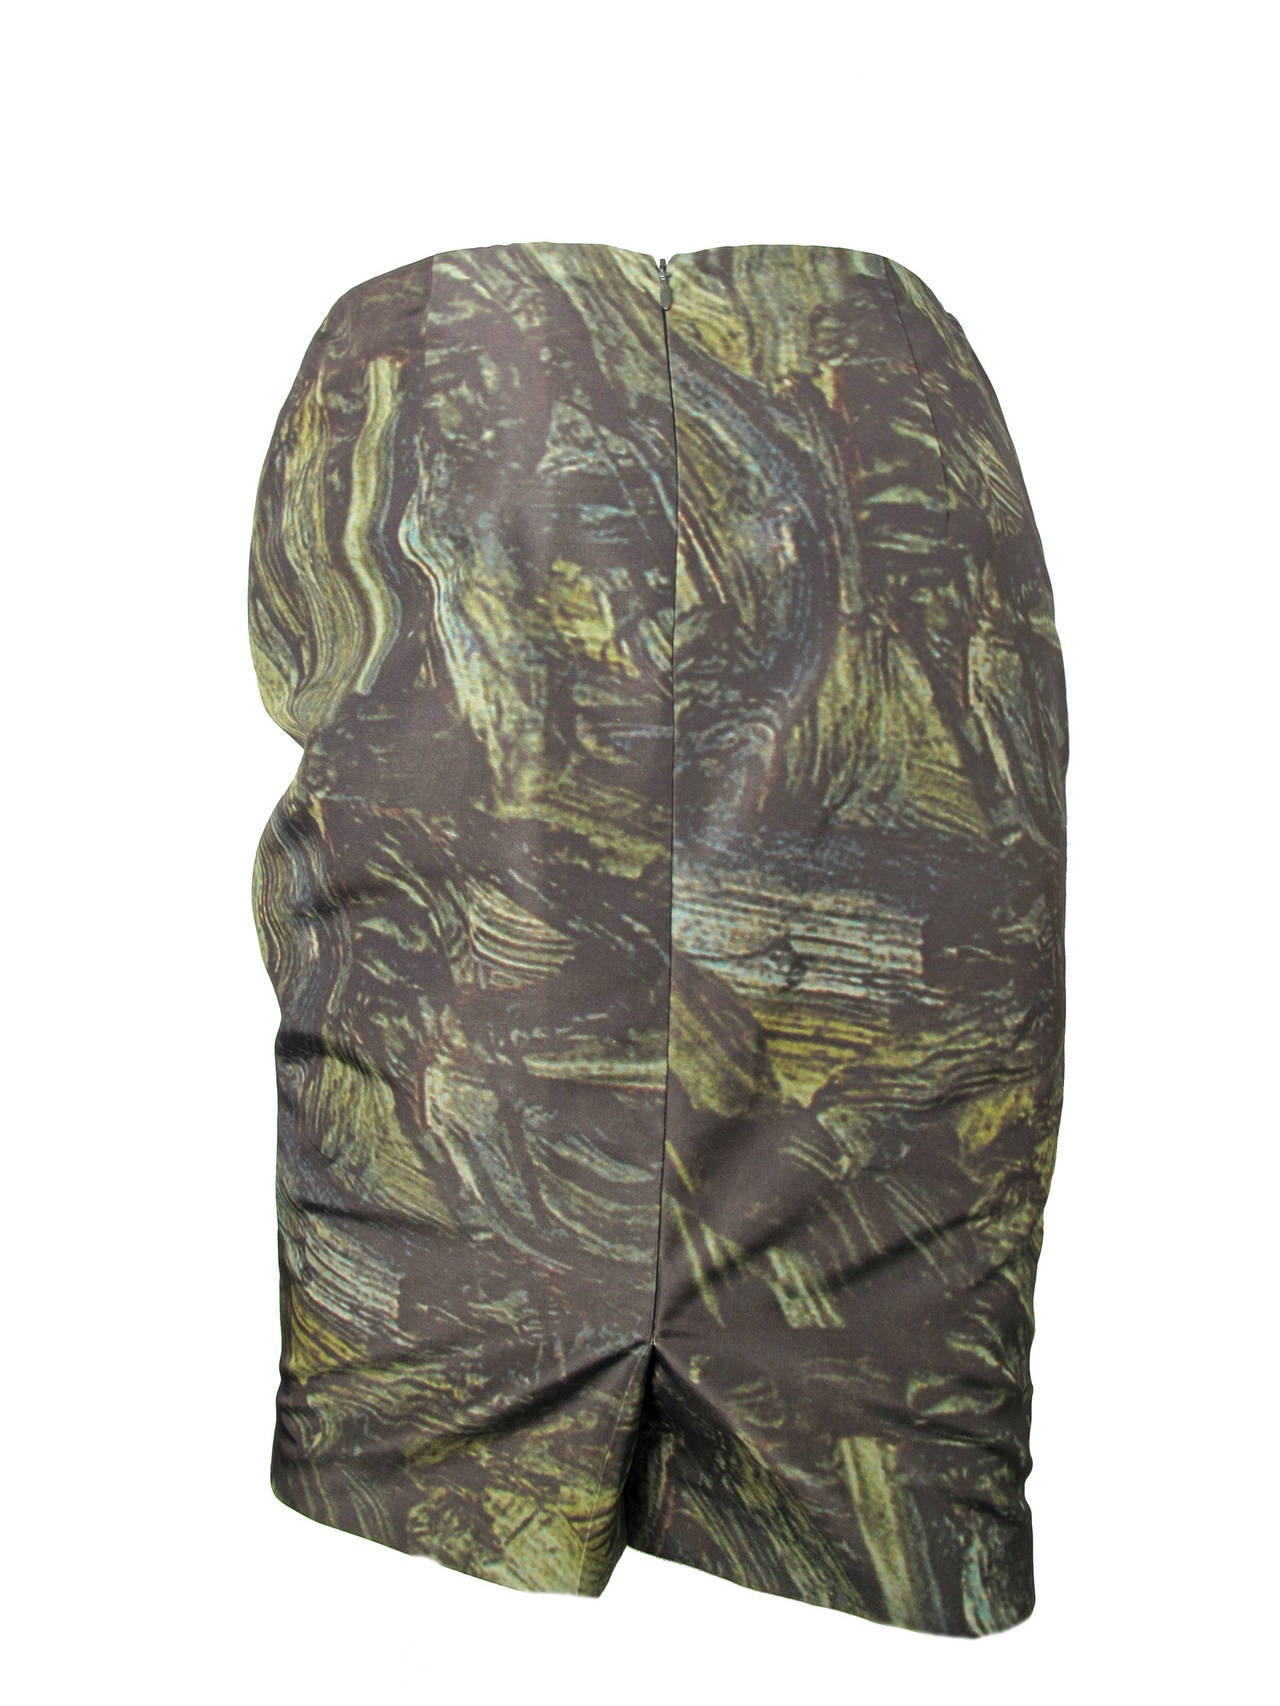 Jil Sander Nylon Paint Print Skirt.  
Condition: Excellent. Size 8 - 10 
30